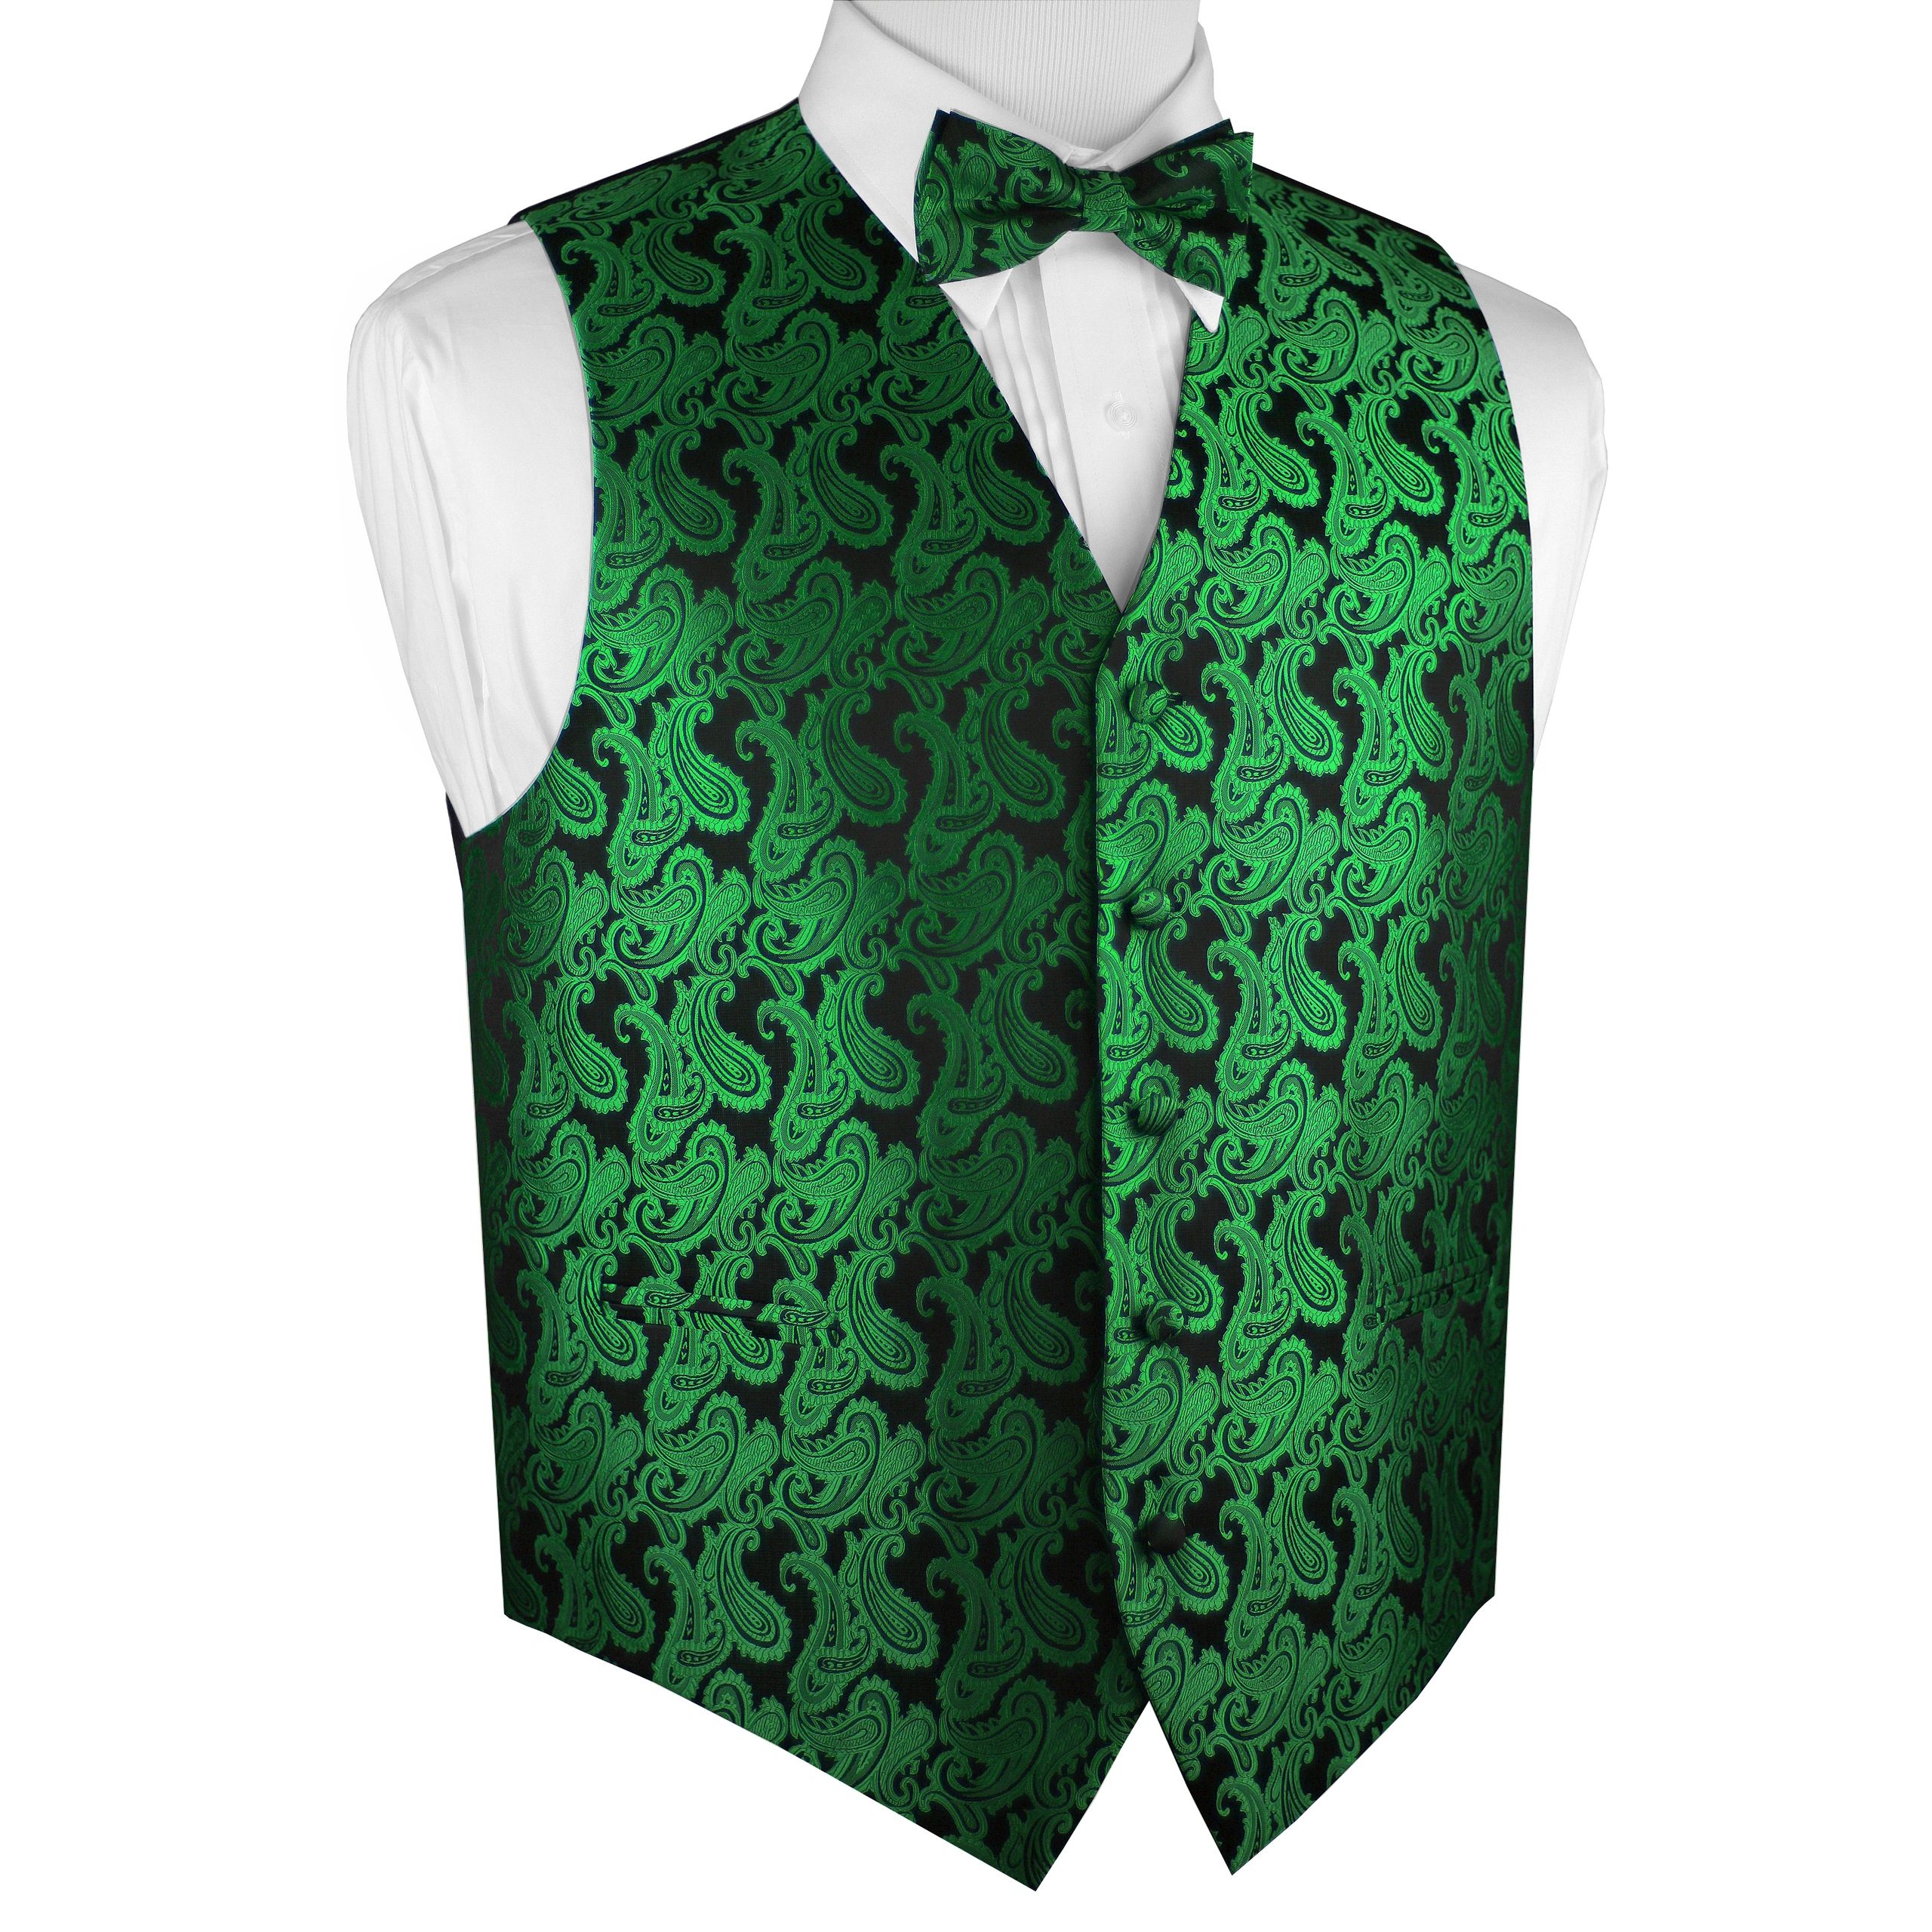 Brand Q Italian Design, Men's Formal Tuxedo Vest, Bow-tie - Green Paisley